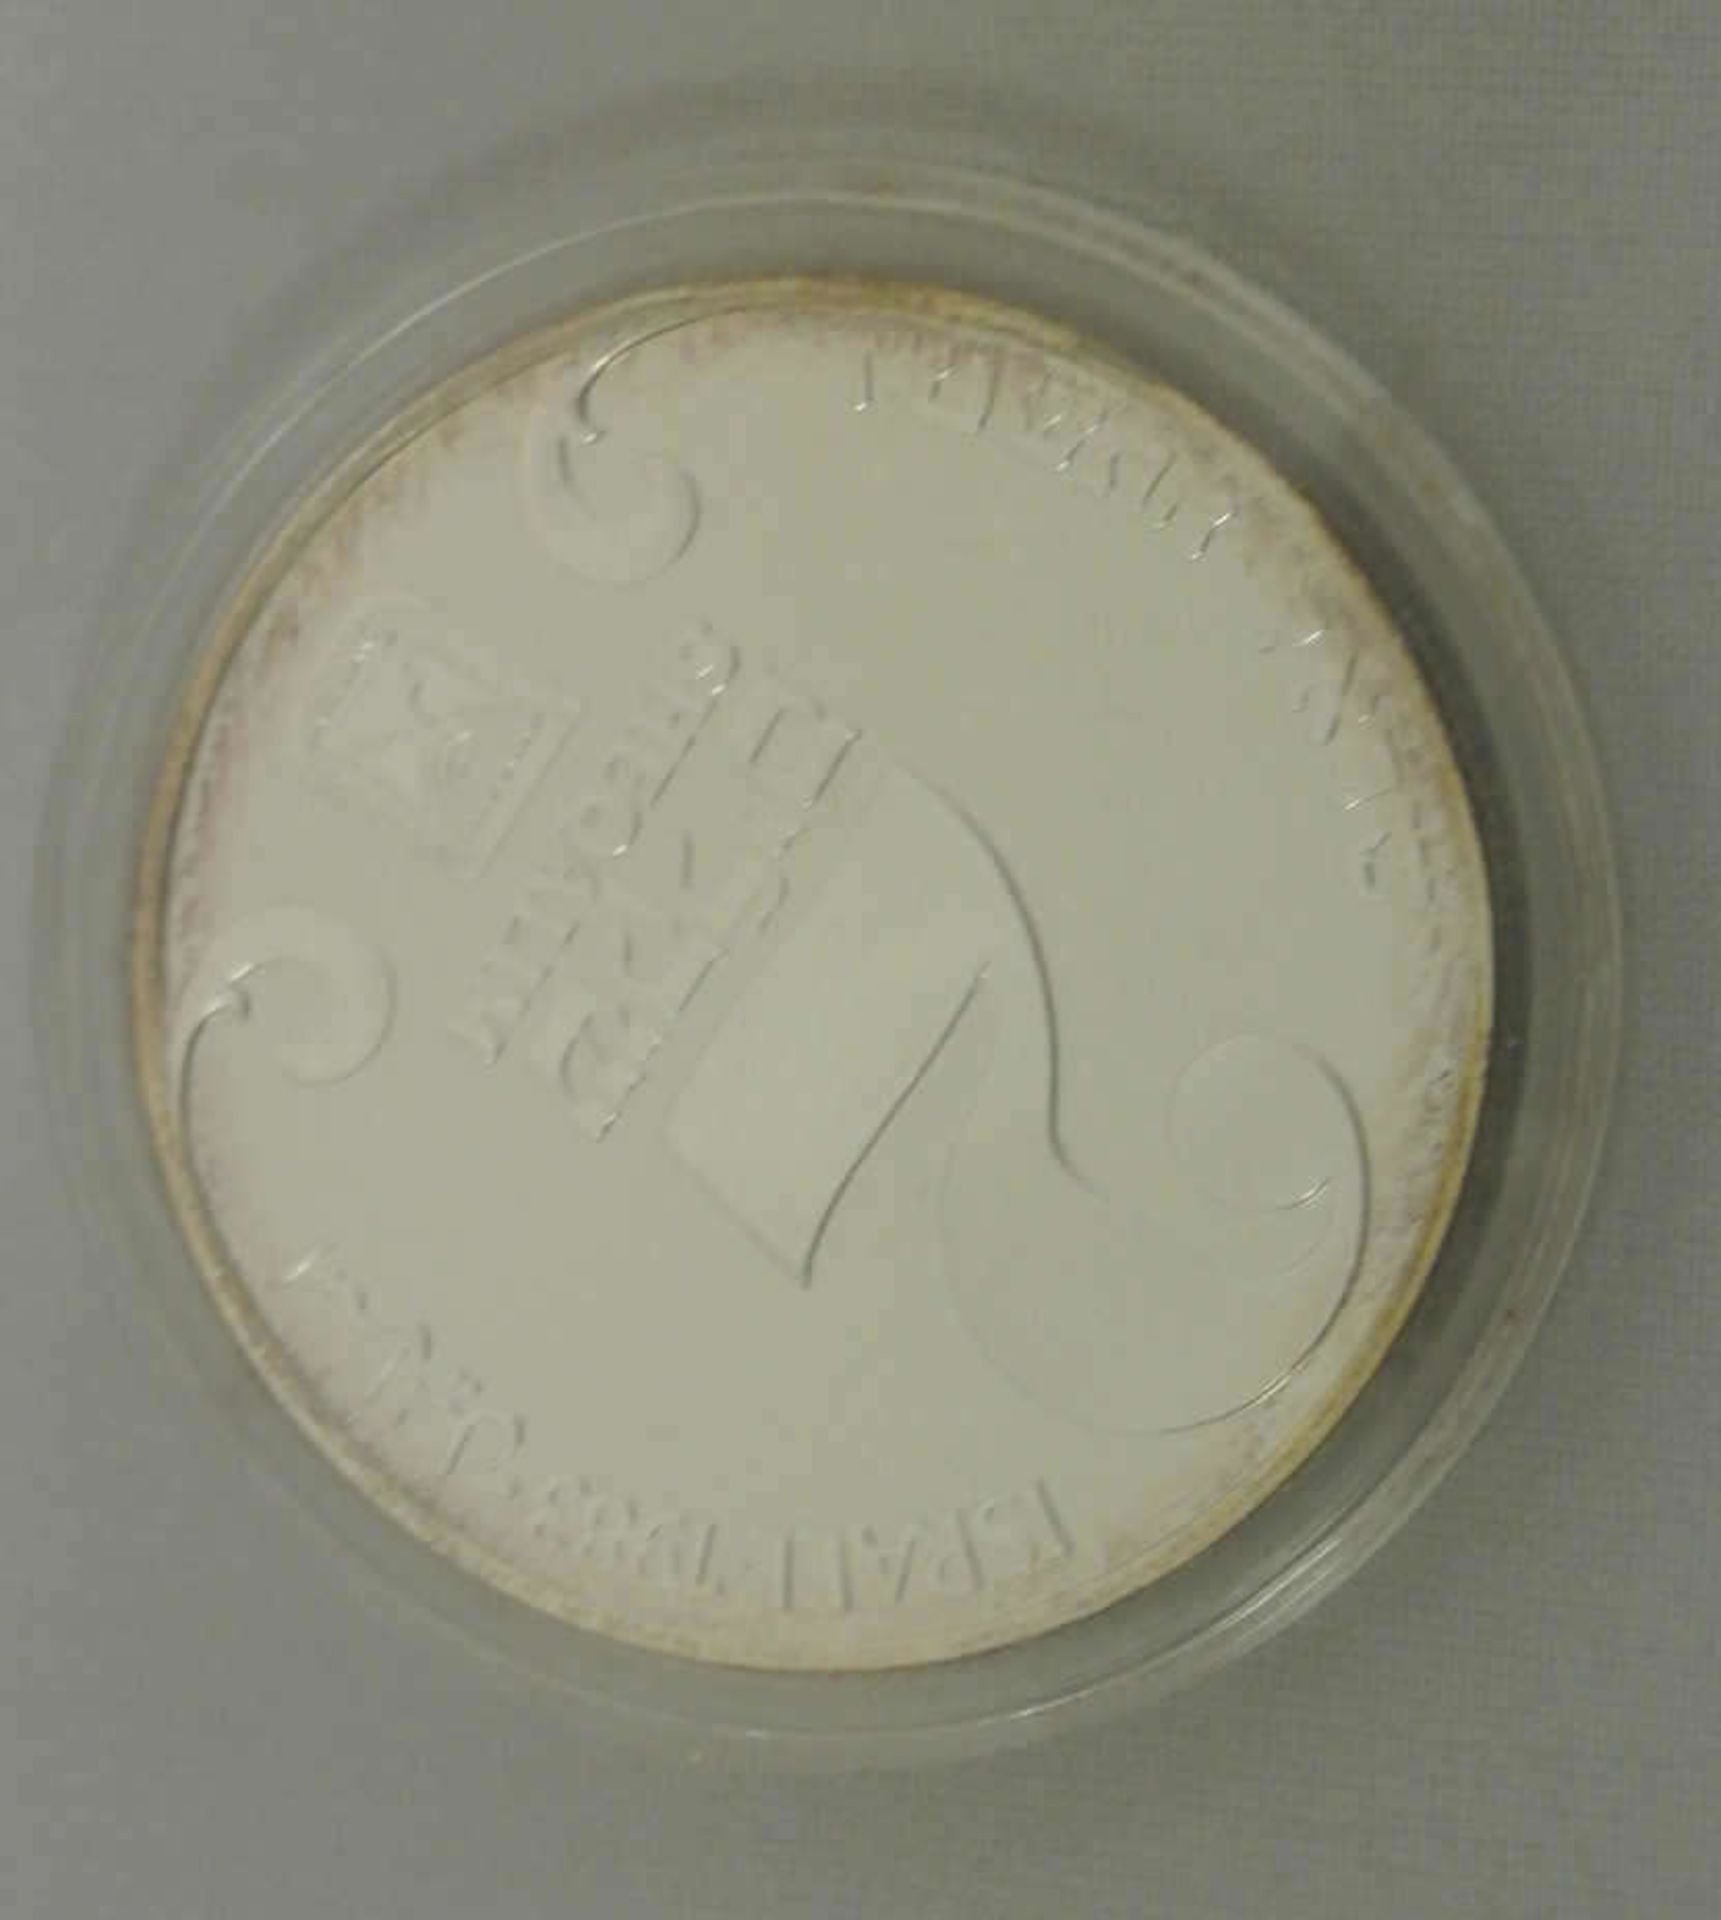 Israel Silbermünze, 2 Sheqalim, 1983 Hanukka, Polierte Platte in Original Box mit Zertifikat. - Bild 2 aus 2